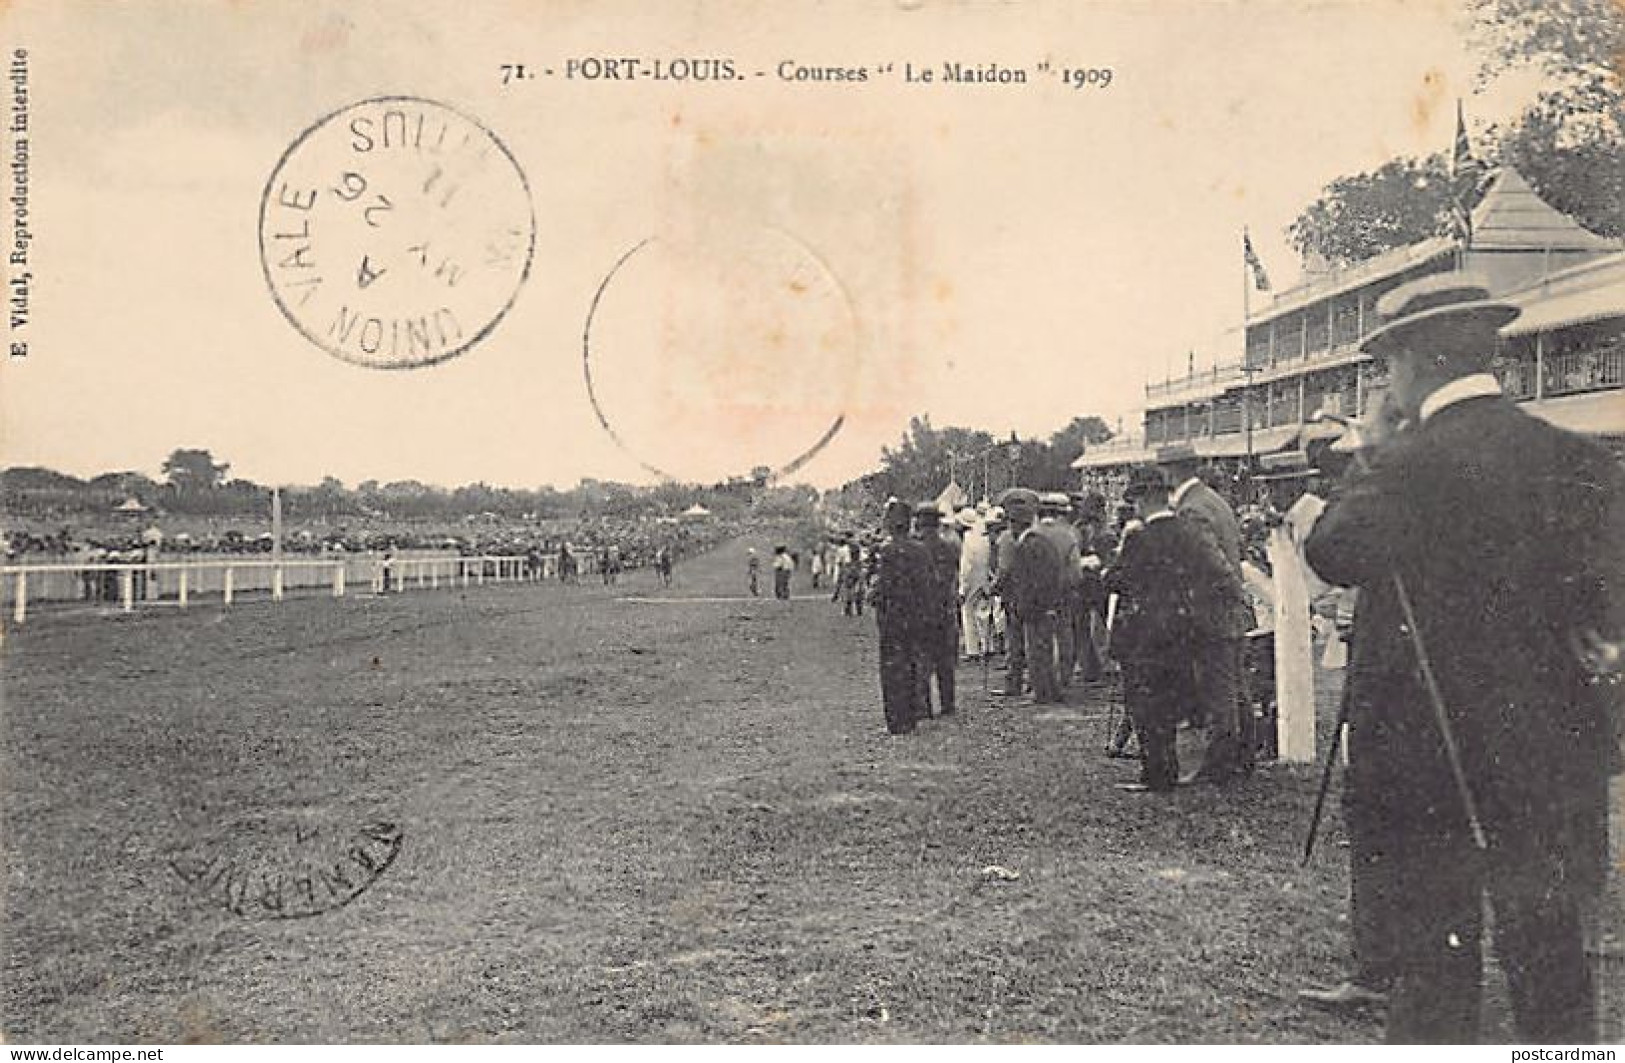 MAURITIUS Ile Maurice - PORT-LOUIS - Courses Le Maidon 1909 - Ed. E. Vidal 71 - Mauritius